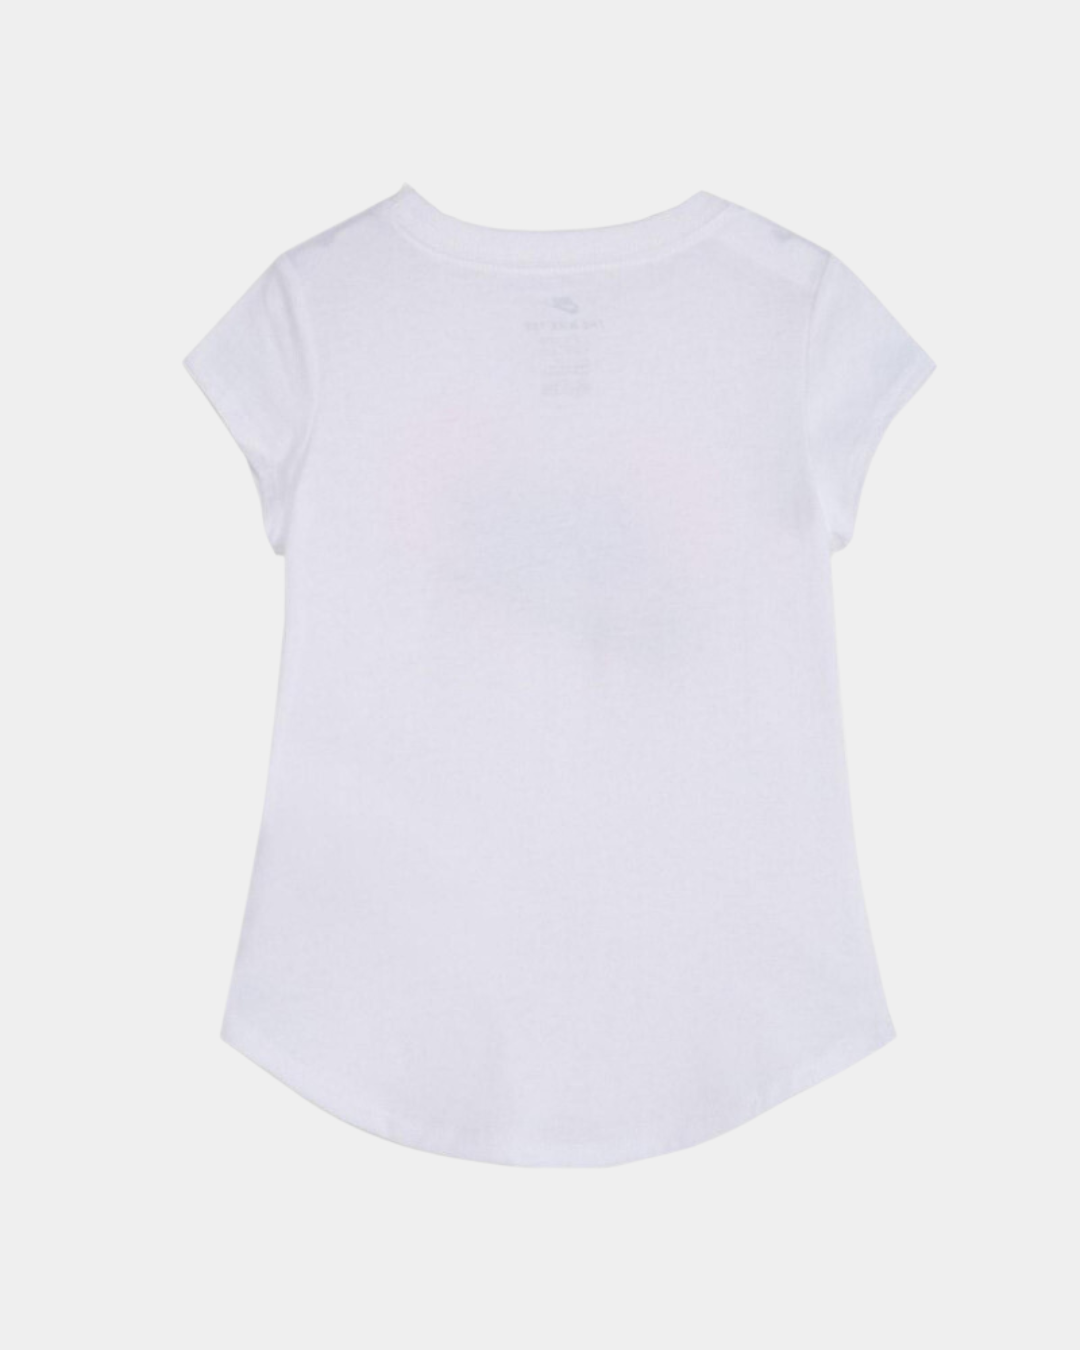 Nike Kids T-Shirt - White/Pink/Blue